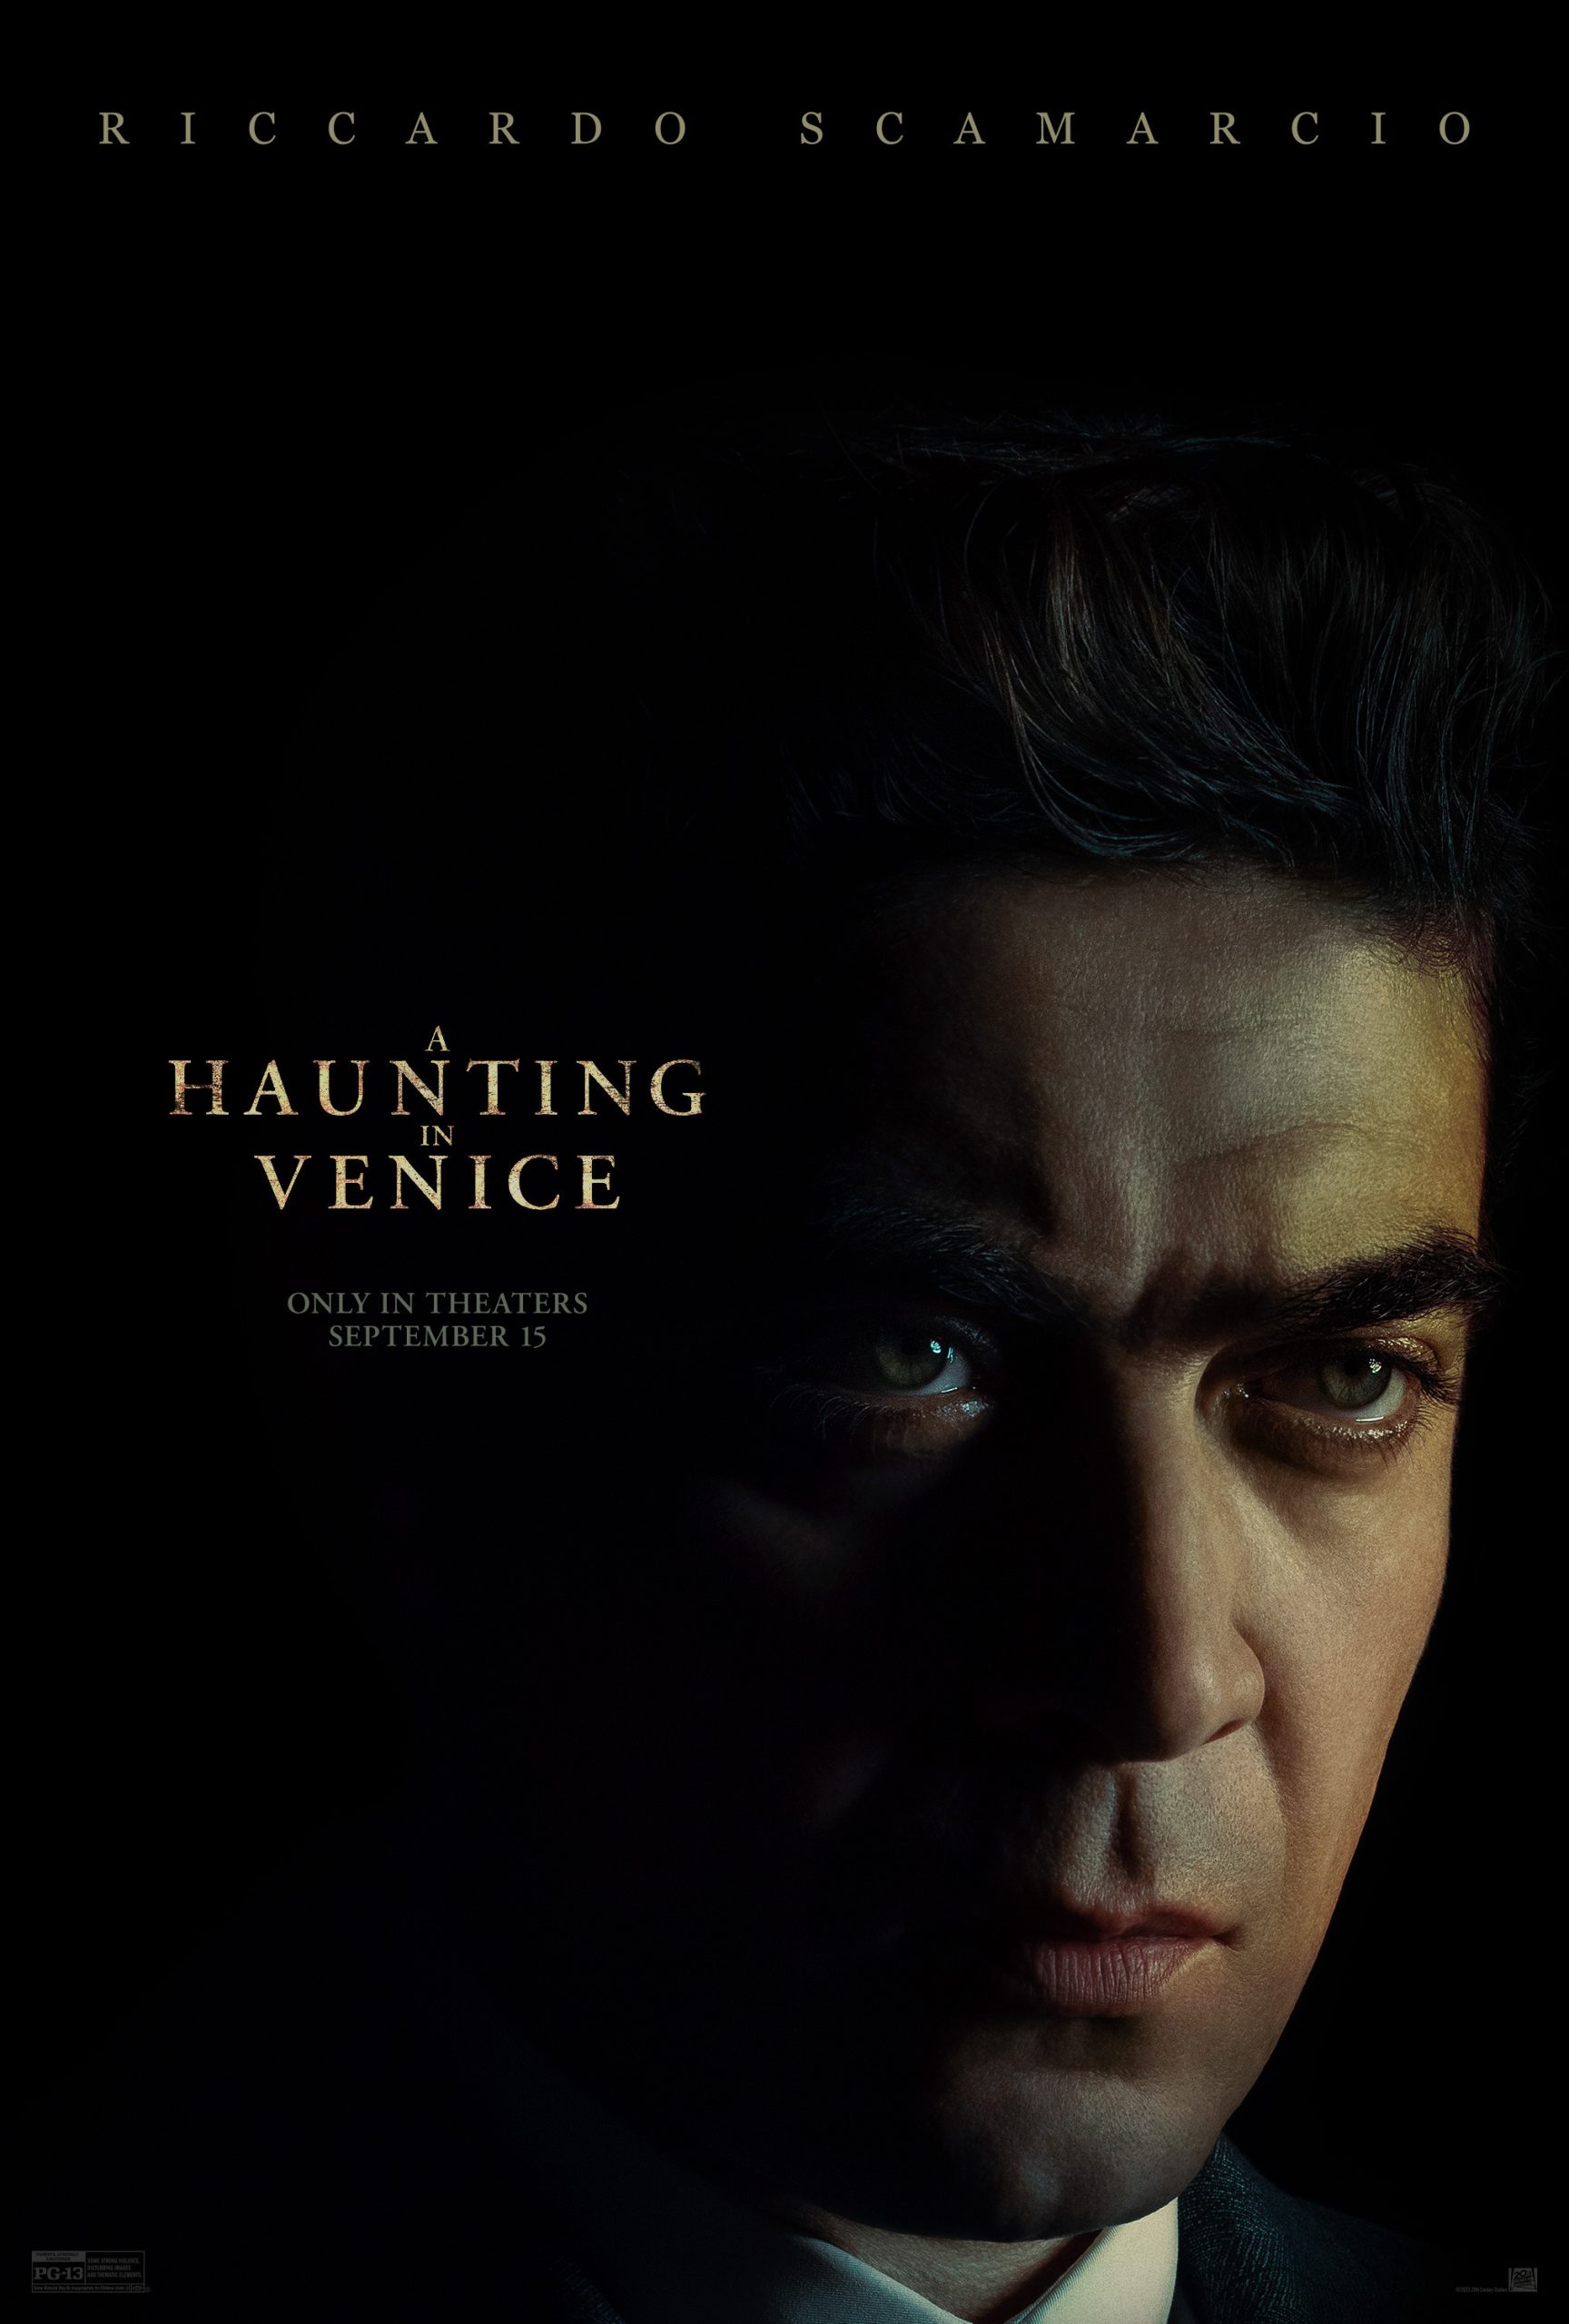 Riccardo Scamarcio as Vitale Portfoglio in A Haunting in Venice.